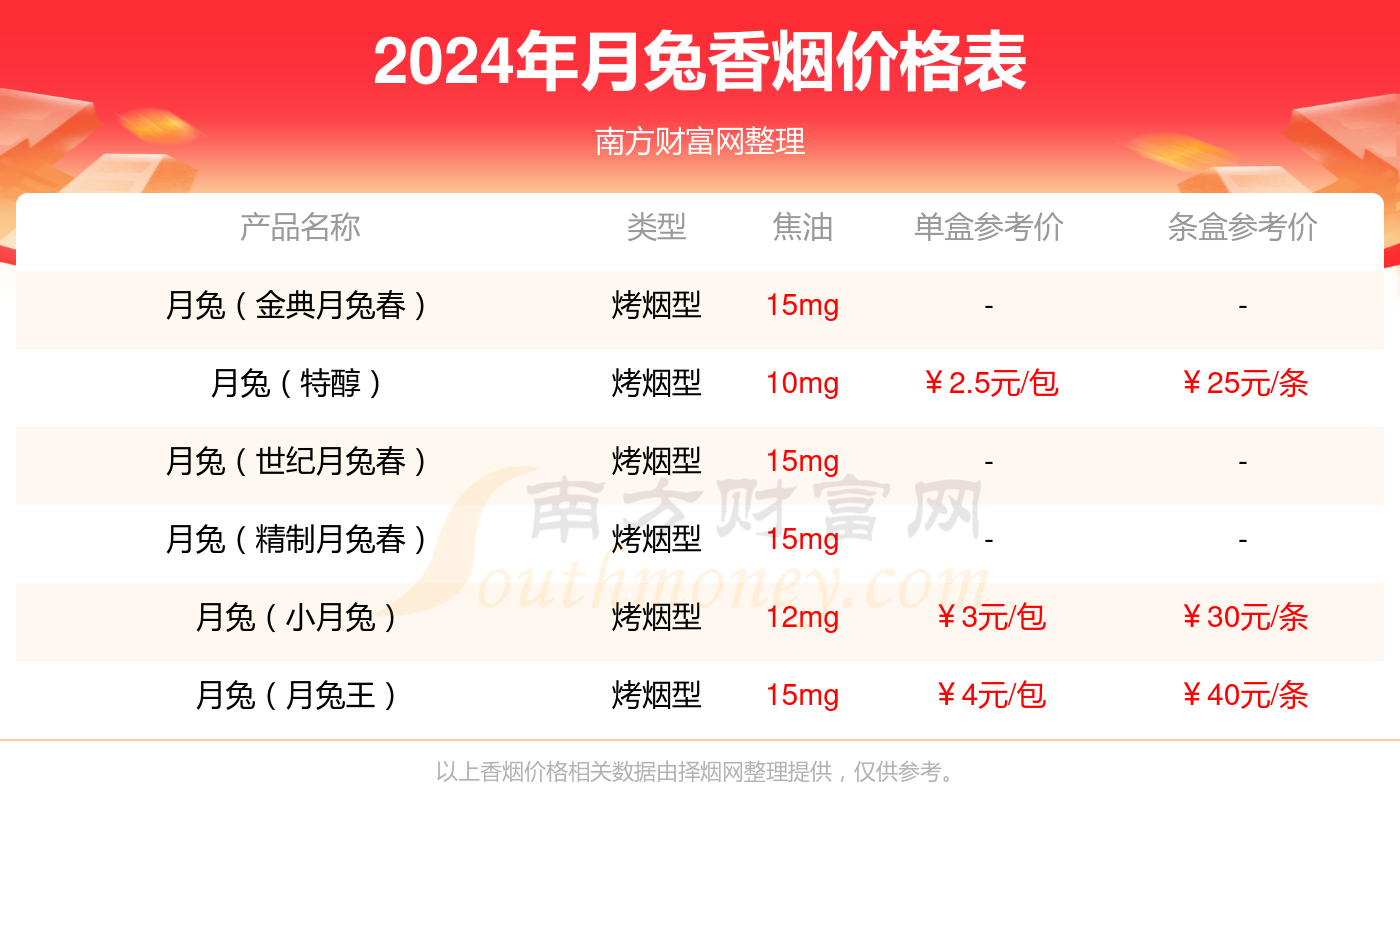 2024年月兔春(2008奥运)香烟价格表查询(基本信息一览)